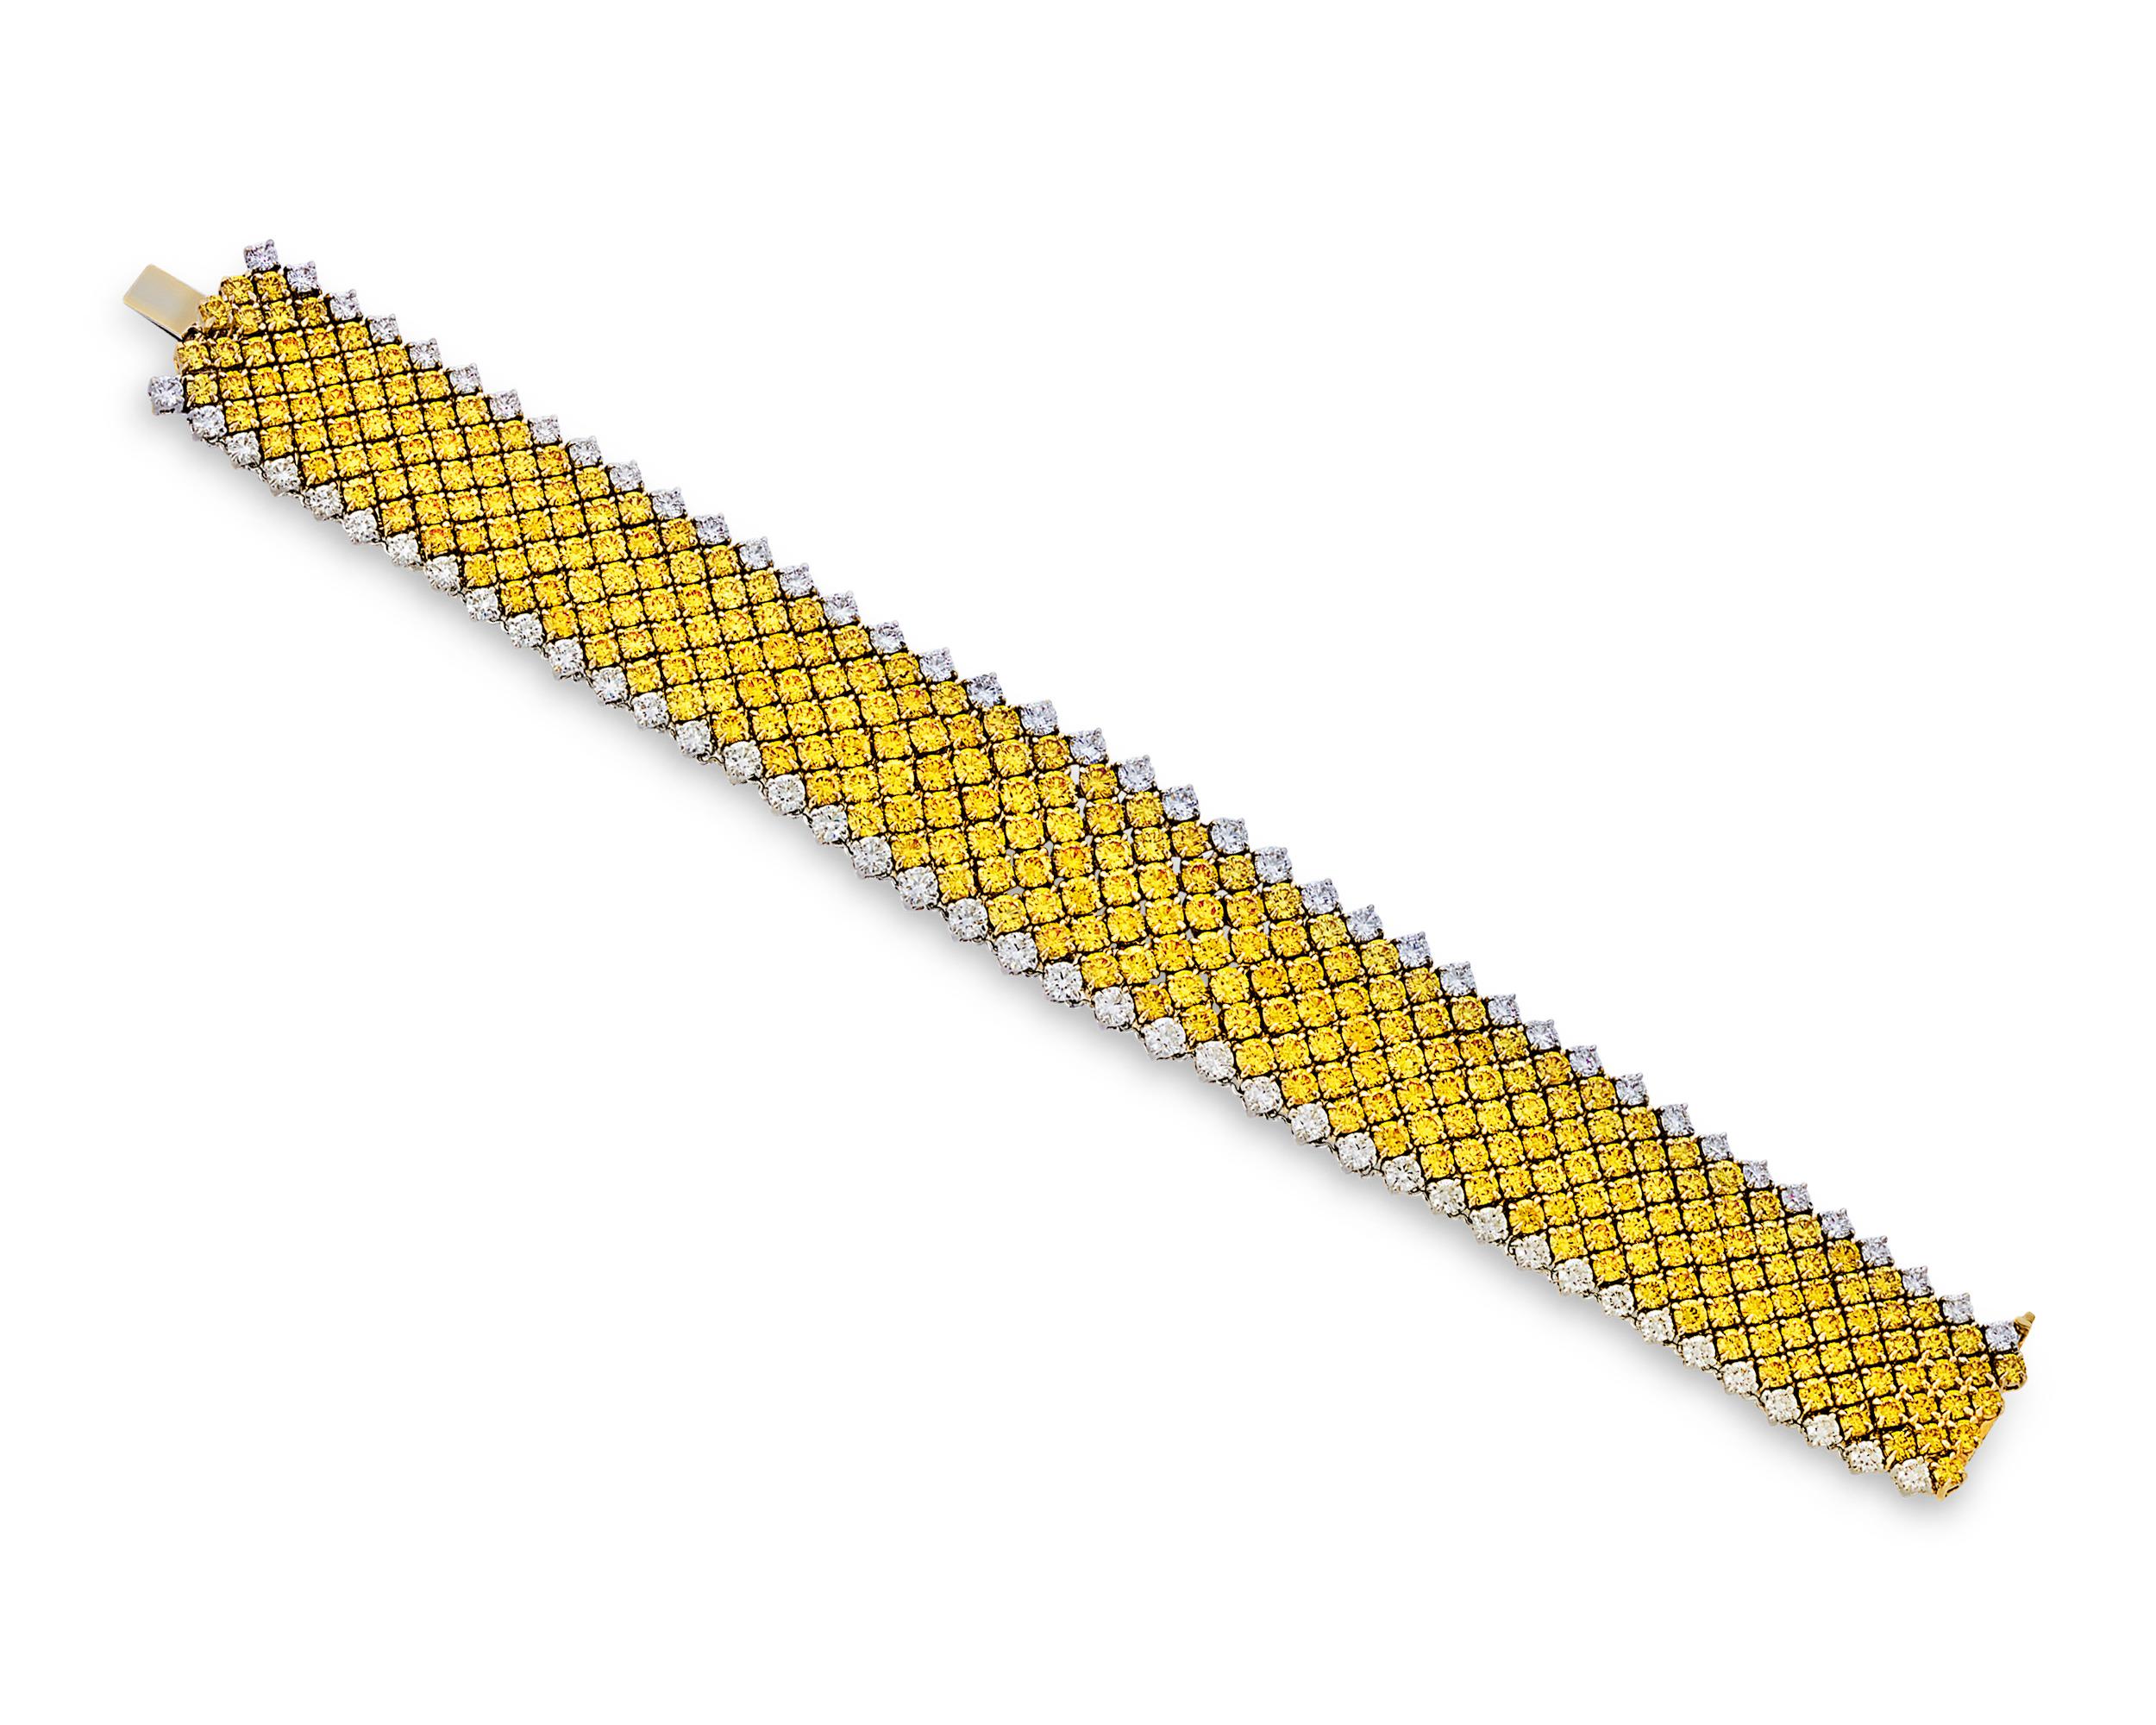 Dieses exquisite Armband besteht aus einer Reihe wunderschön aufeinander abgestimmter gelber Fancy-Diamanten von insgesamt 28,40 Karat. Die sonnengelben Diamanten werden von 7,43 Karat weißen Diamanten eingefasst. Diese brillanten Juwelen sind in